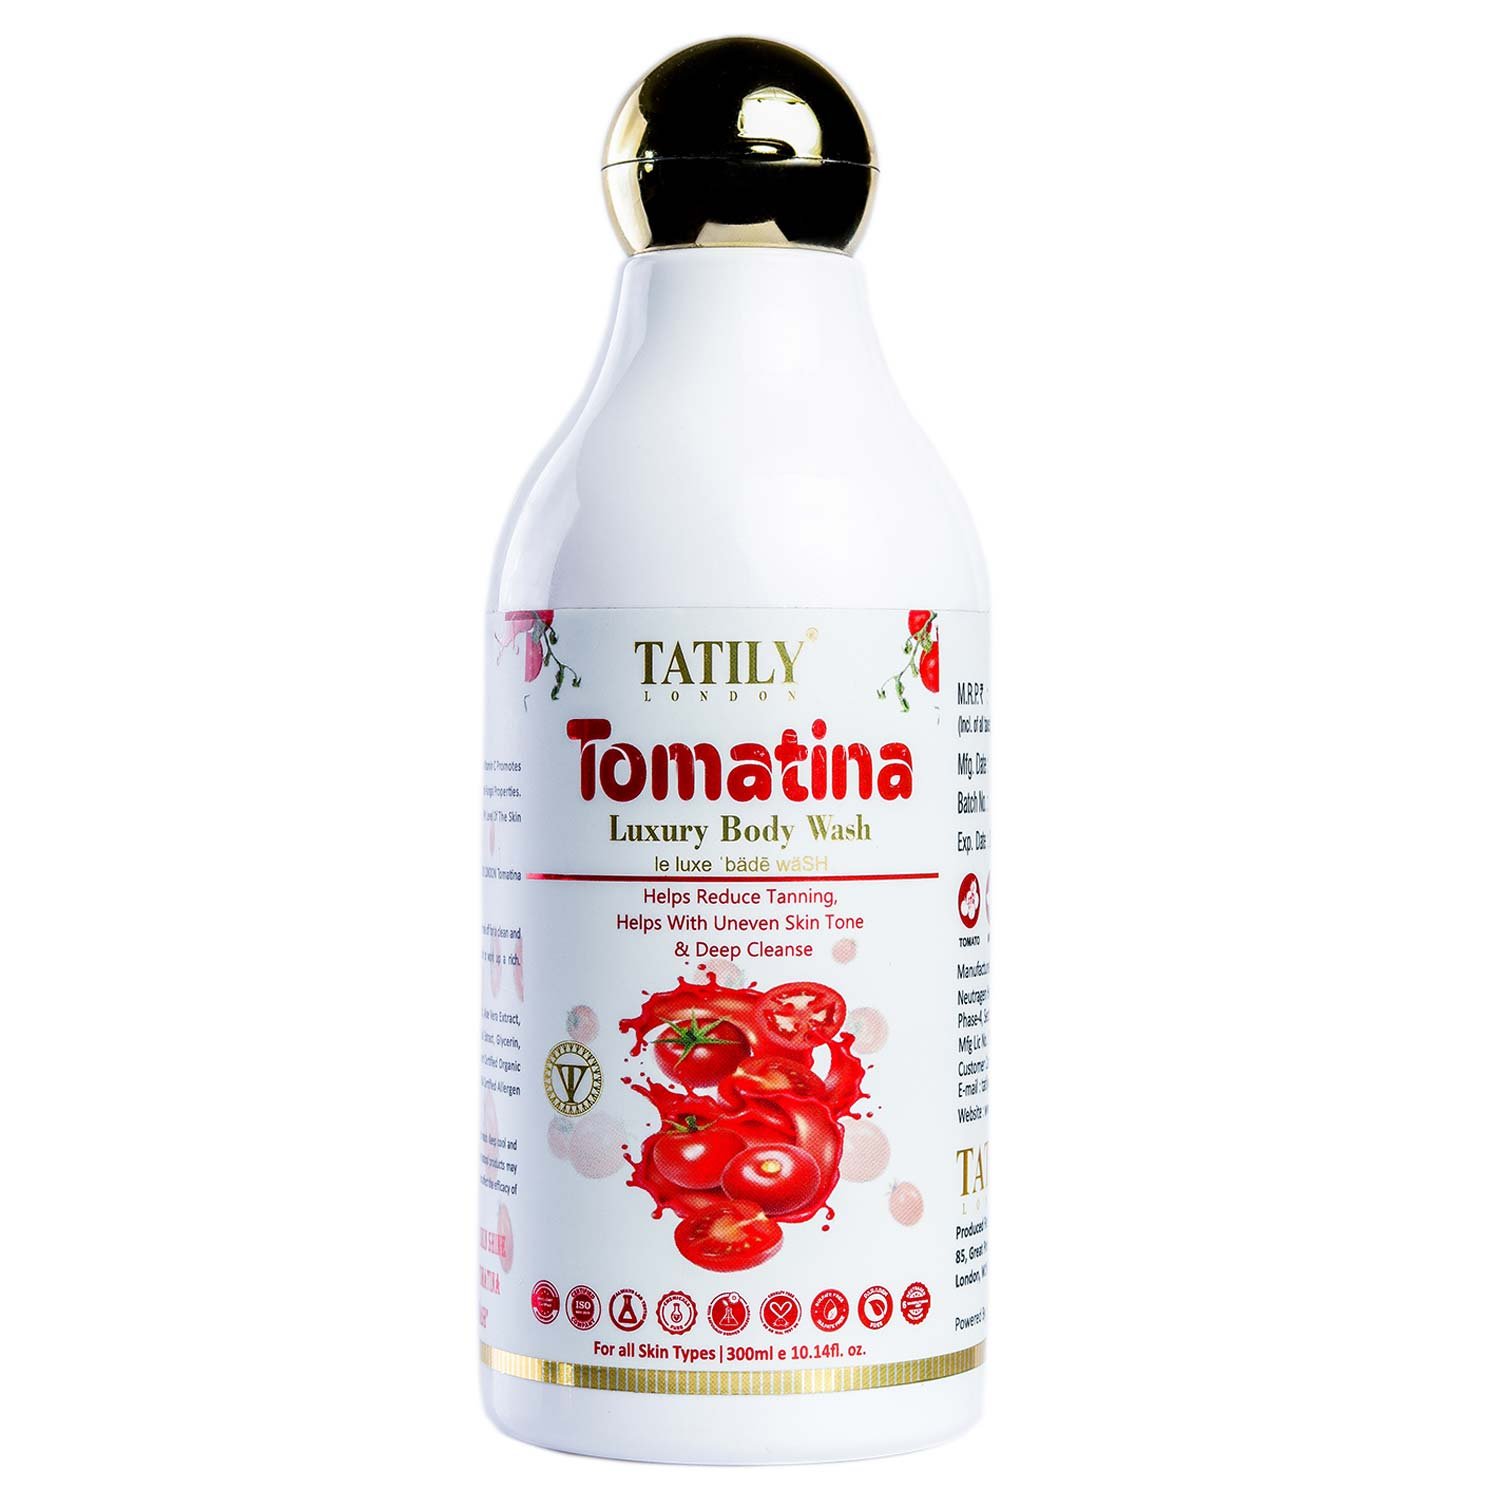 tatily-london-tomatina-bodywash-300ml-1